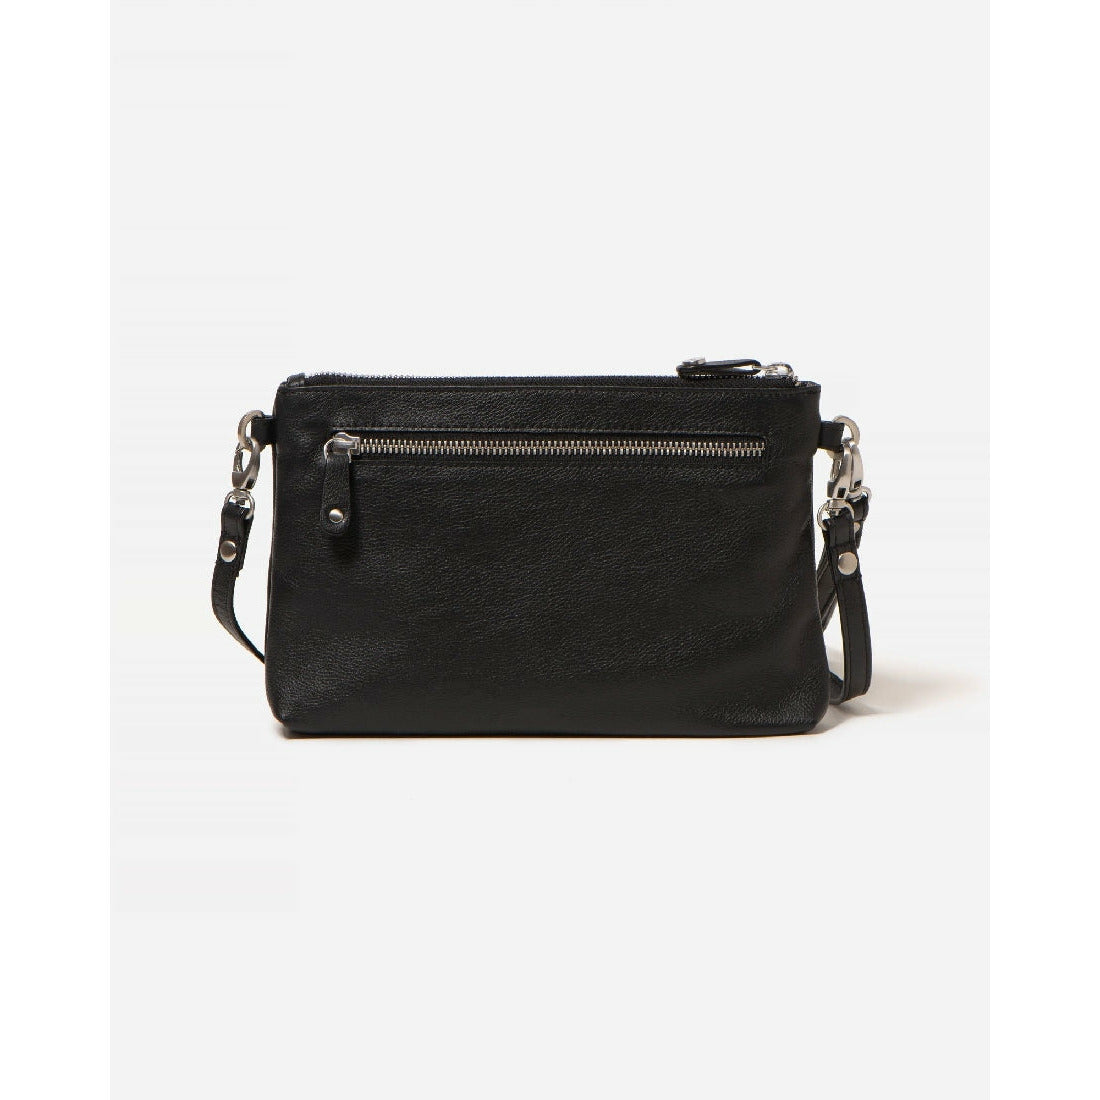 Stitch & Hide Madison Clutch Bag - Little Extras Lifestyle Boutique